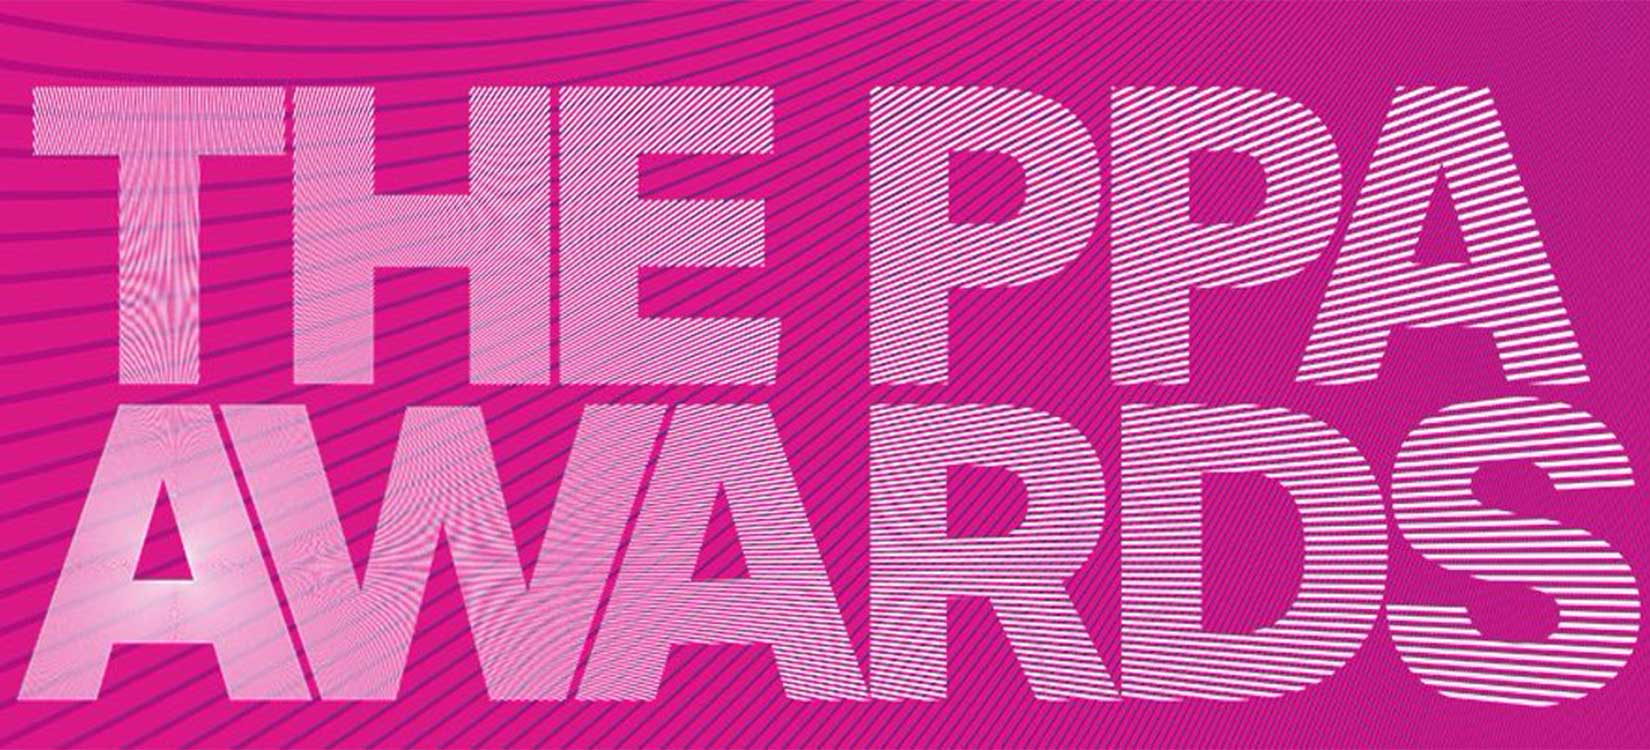 Pulse Editor wins at the PPA Awards